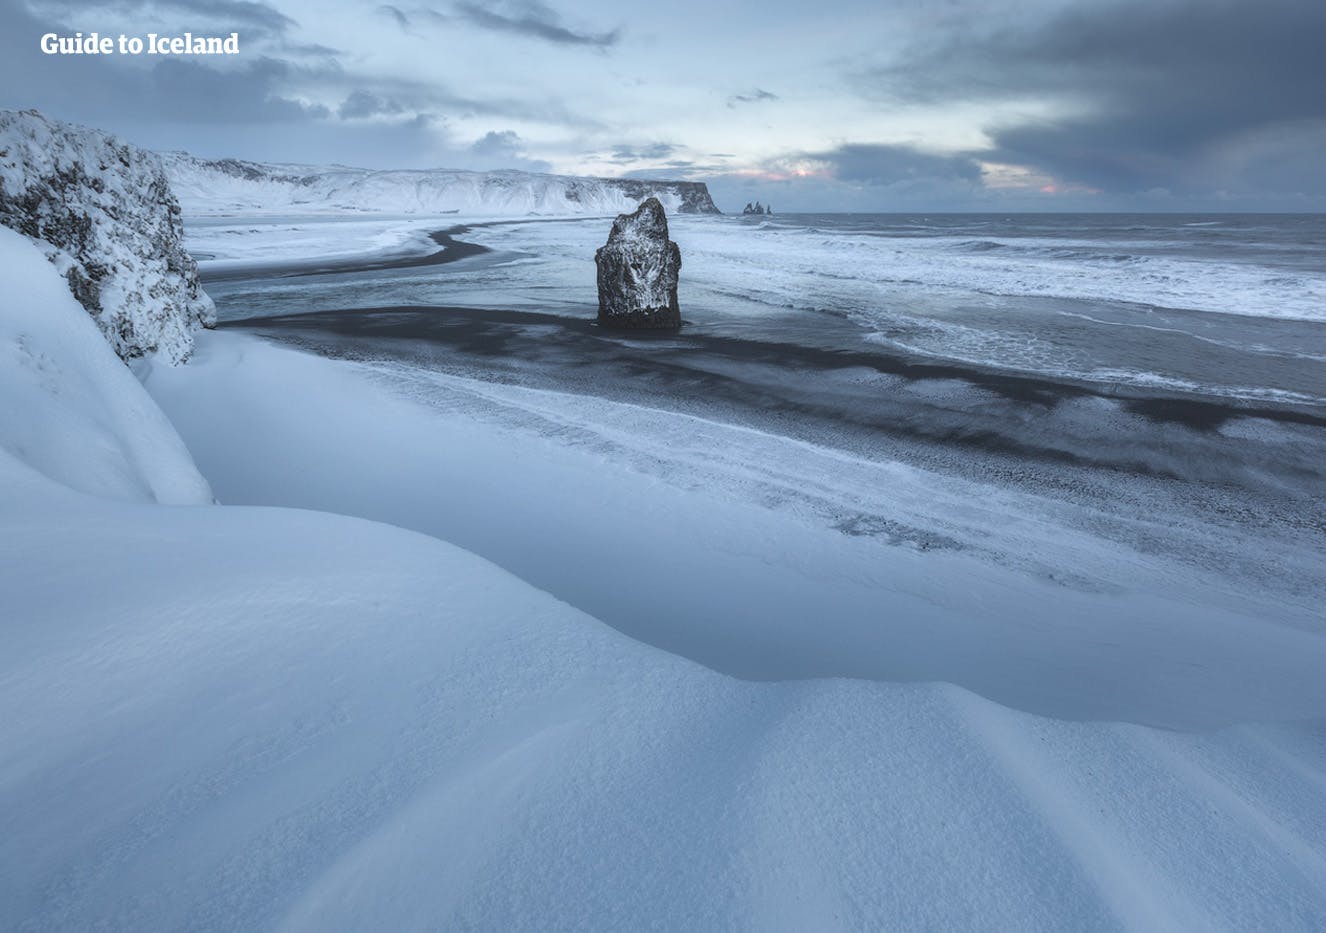 Le sabbie nere delle spiagge della costa meridionale dell'Islanda in pieno inverno sono visibili solo nel tratto in cui è arrivato il mare.